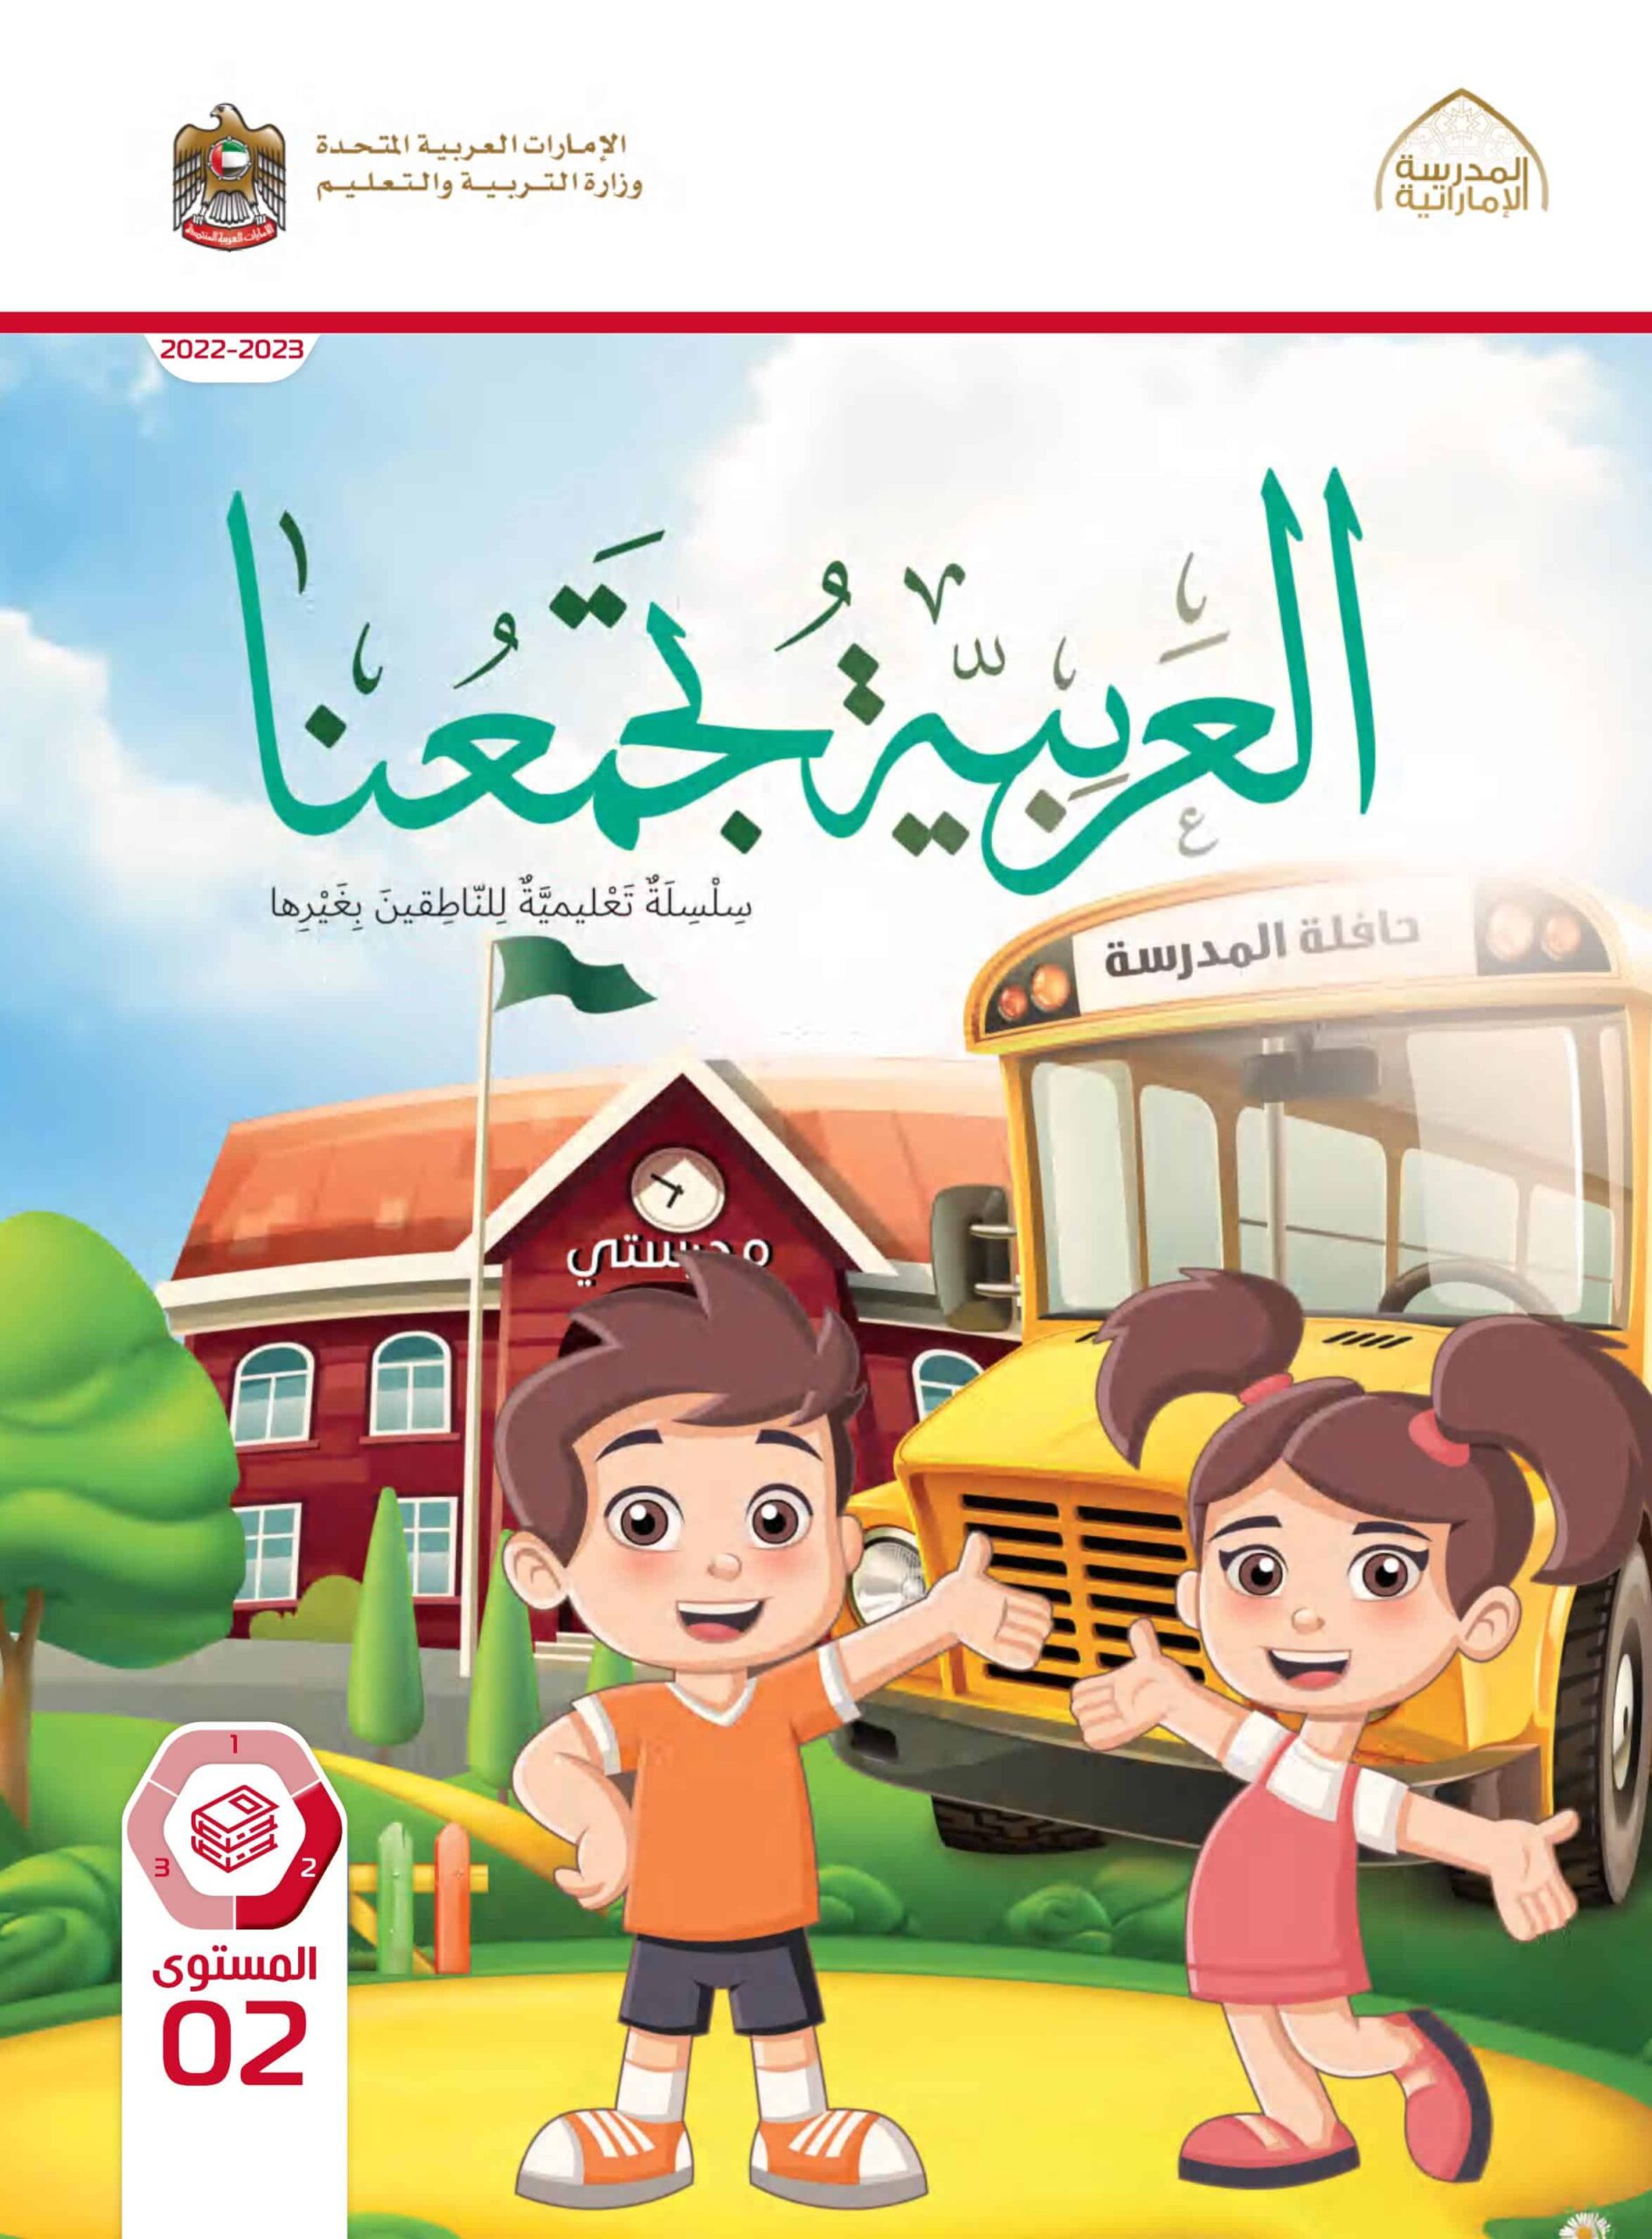 كتاب الطالب لغير الناطقين بها اللغة العربية الصف الثاني الفصل الدراسي الثاني 2022-2023